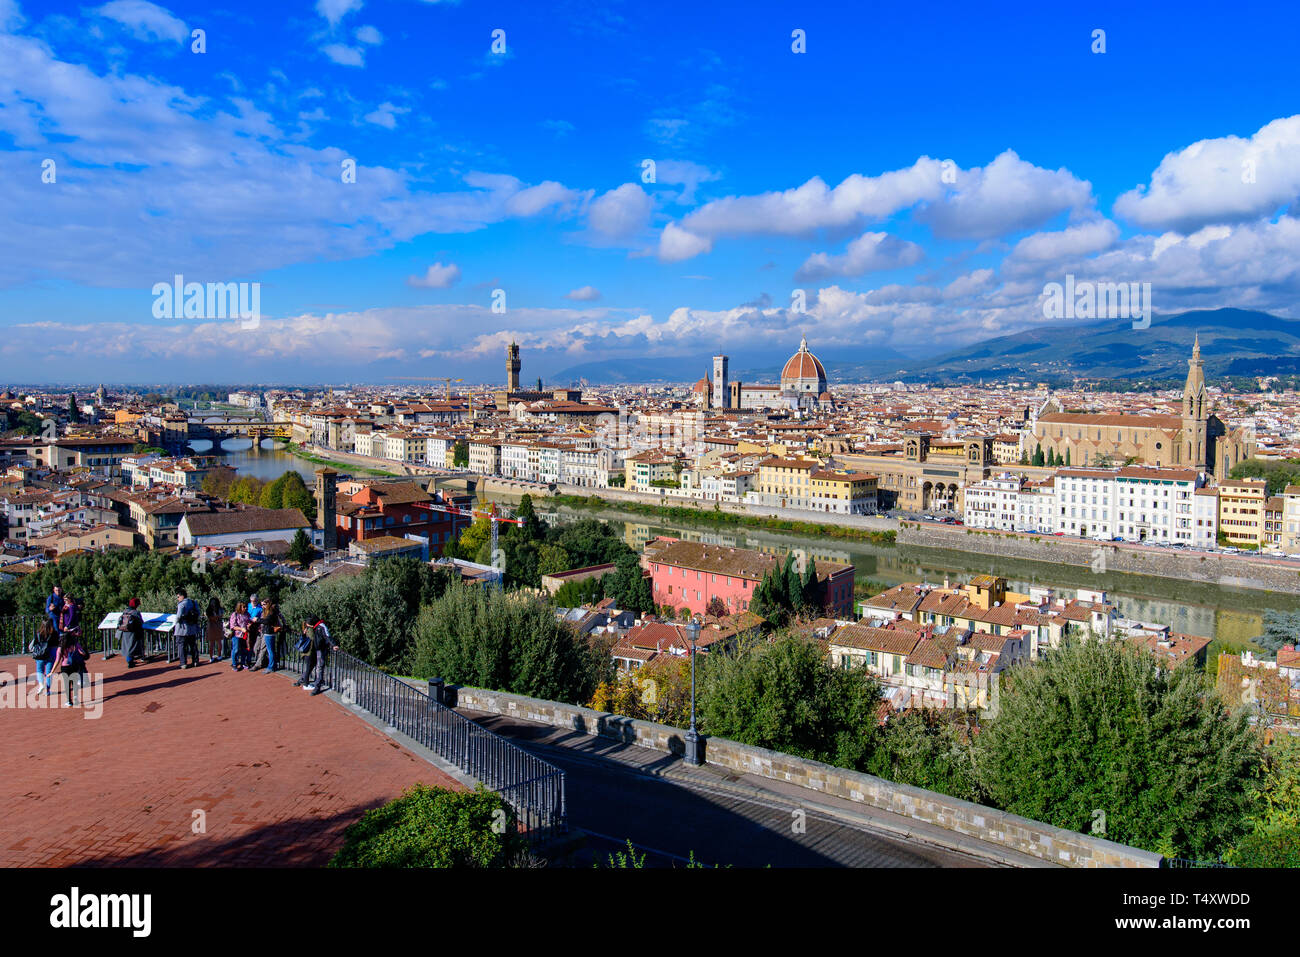 Vue panoramique sur la ville de Florence depuis la place Michelangelo en Italie Banque D'Images